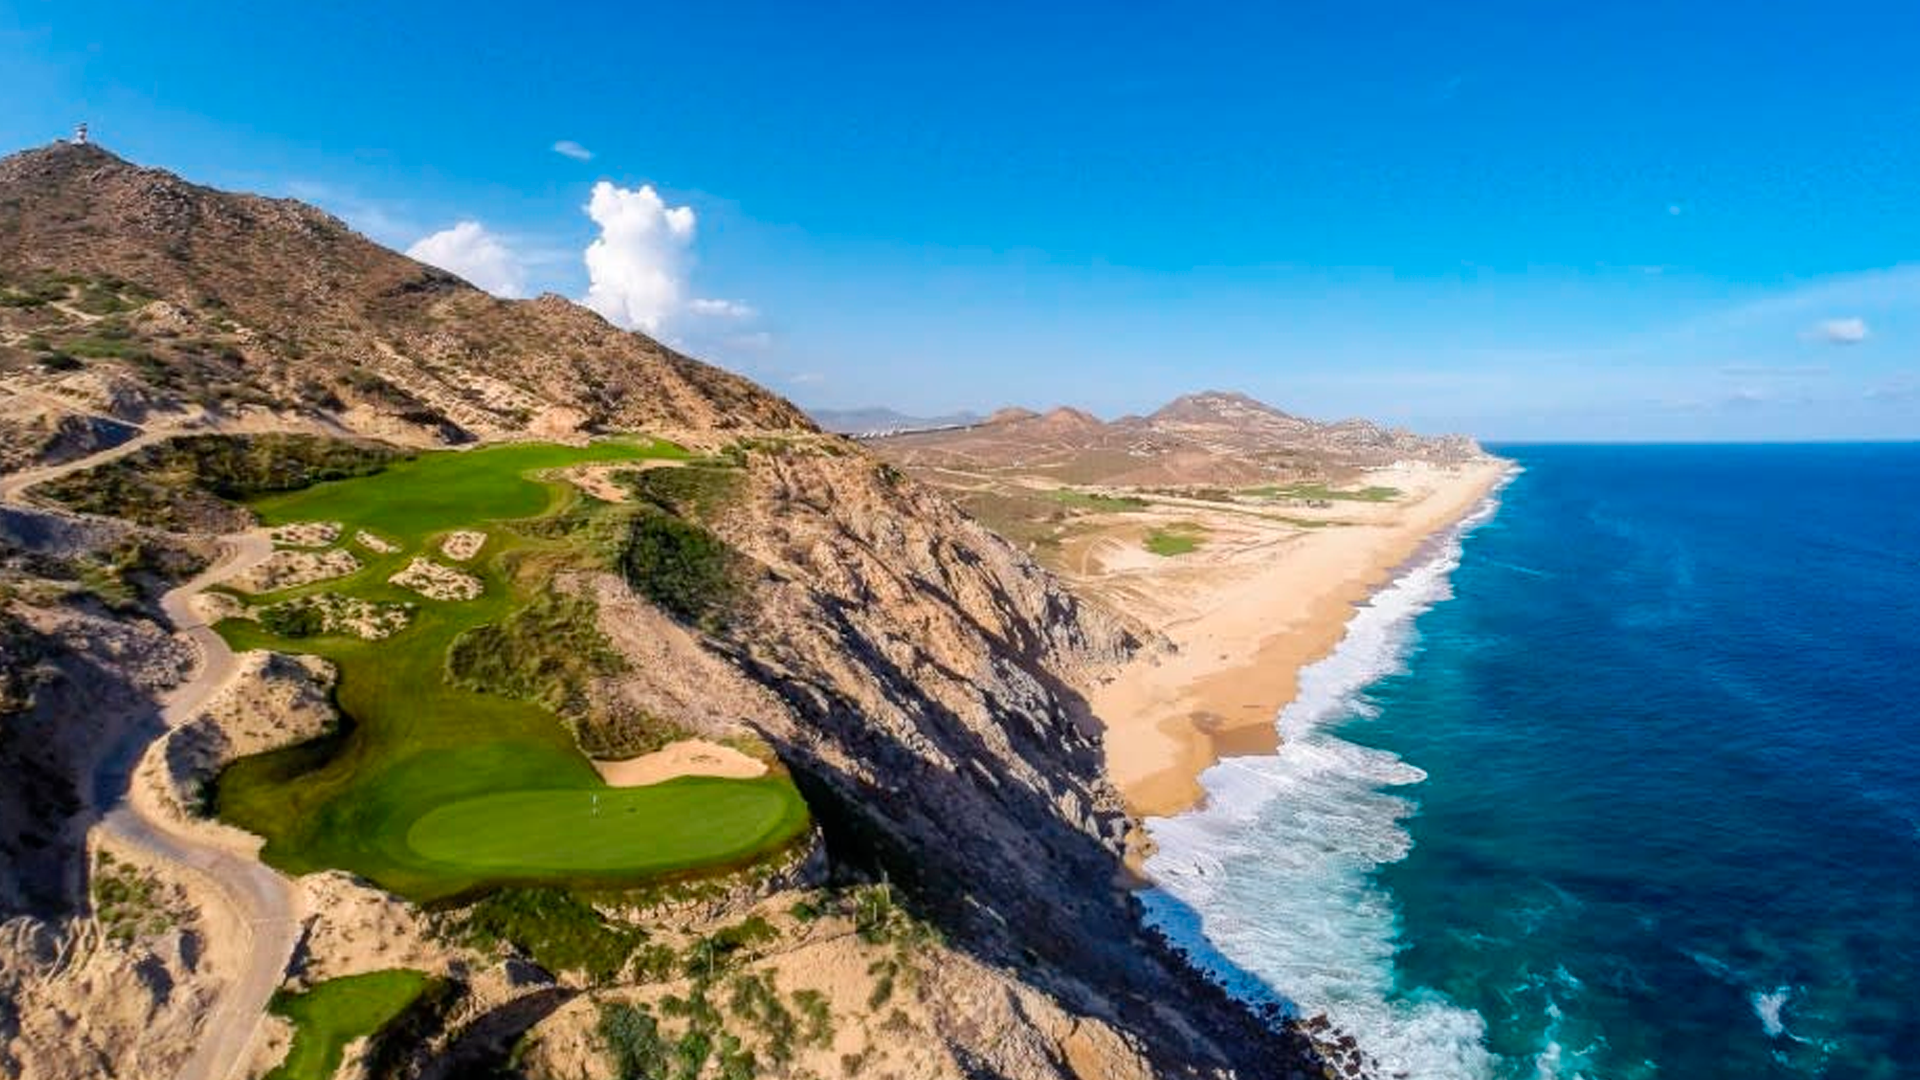 La cancha de golf que mira al mar en Los Cabos, México